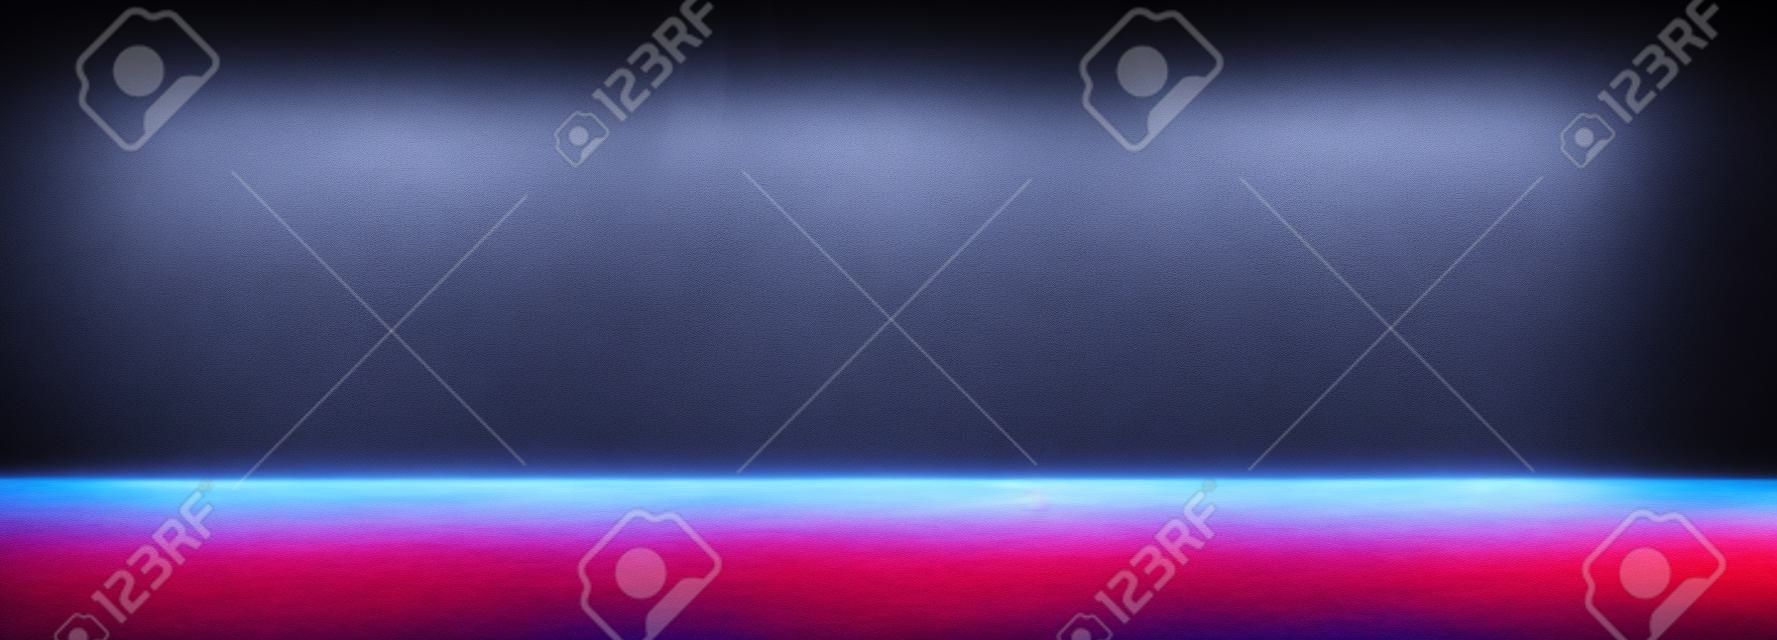 Espaço vazio da sala escura do estúdio com neblina ou névoa e efeito de iluminação vermelho e azul no fundo gradiente de piso de concreto.